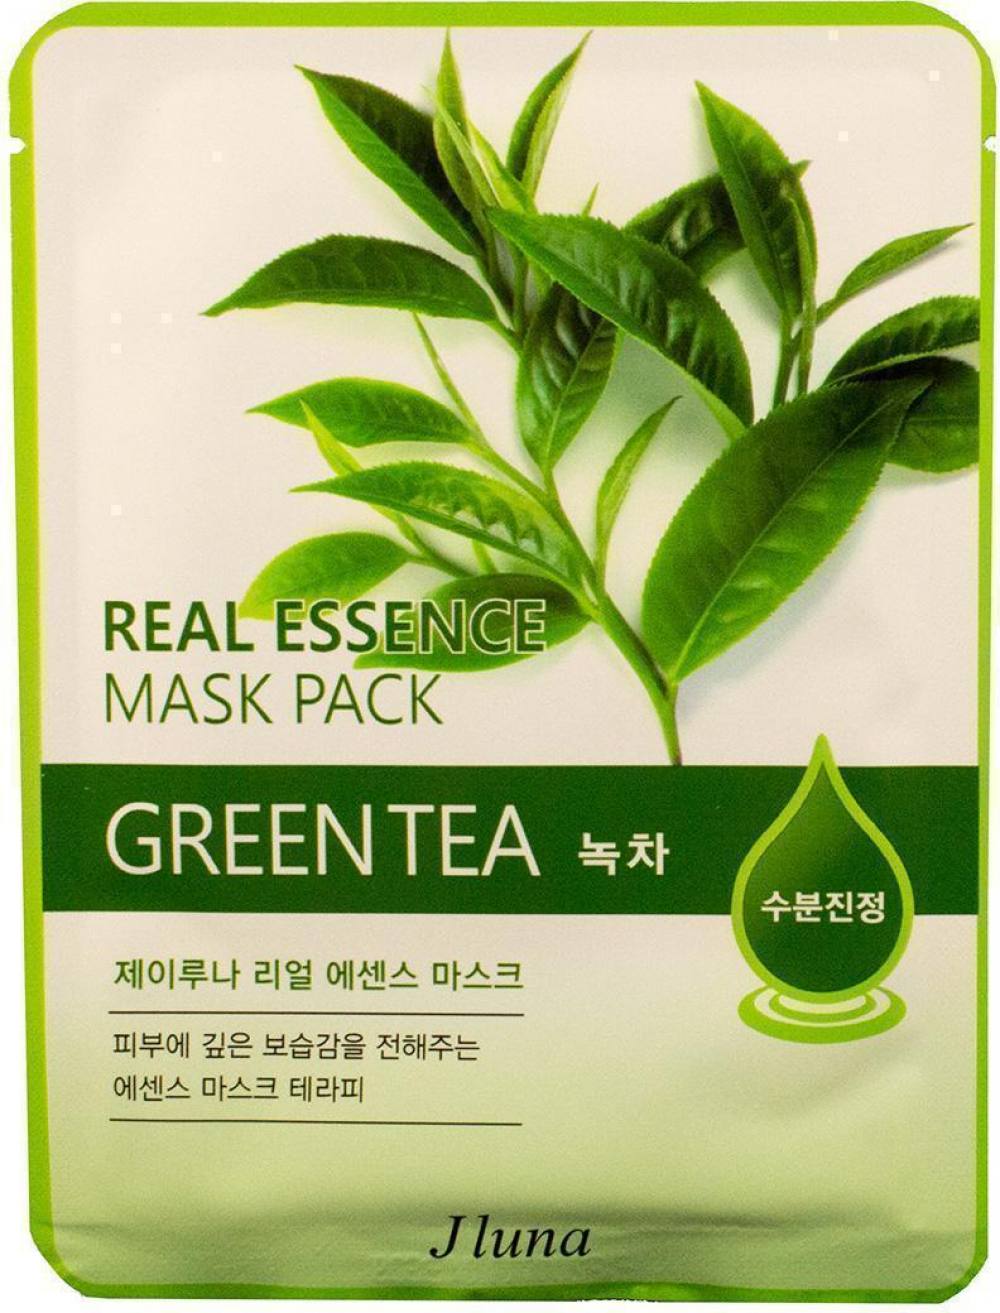 Тканевая маска с экстрактом зеленого чая JLuna Real Essence Mask Green Tea. Артикул 081800038